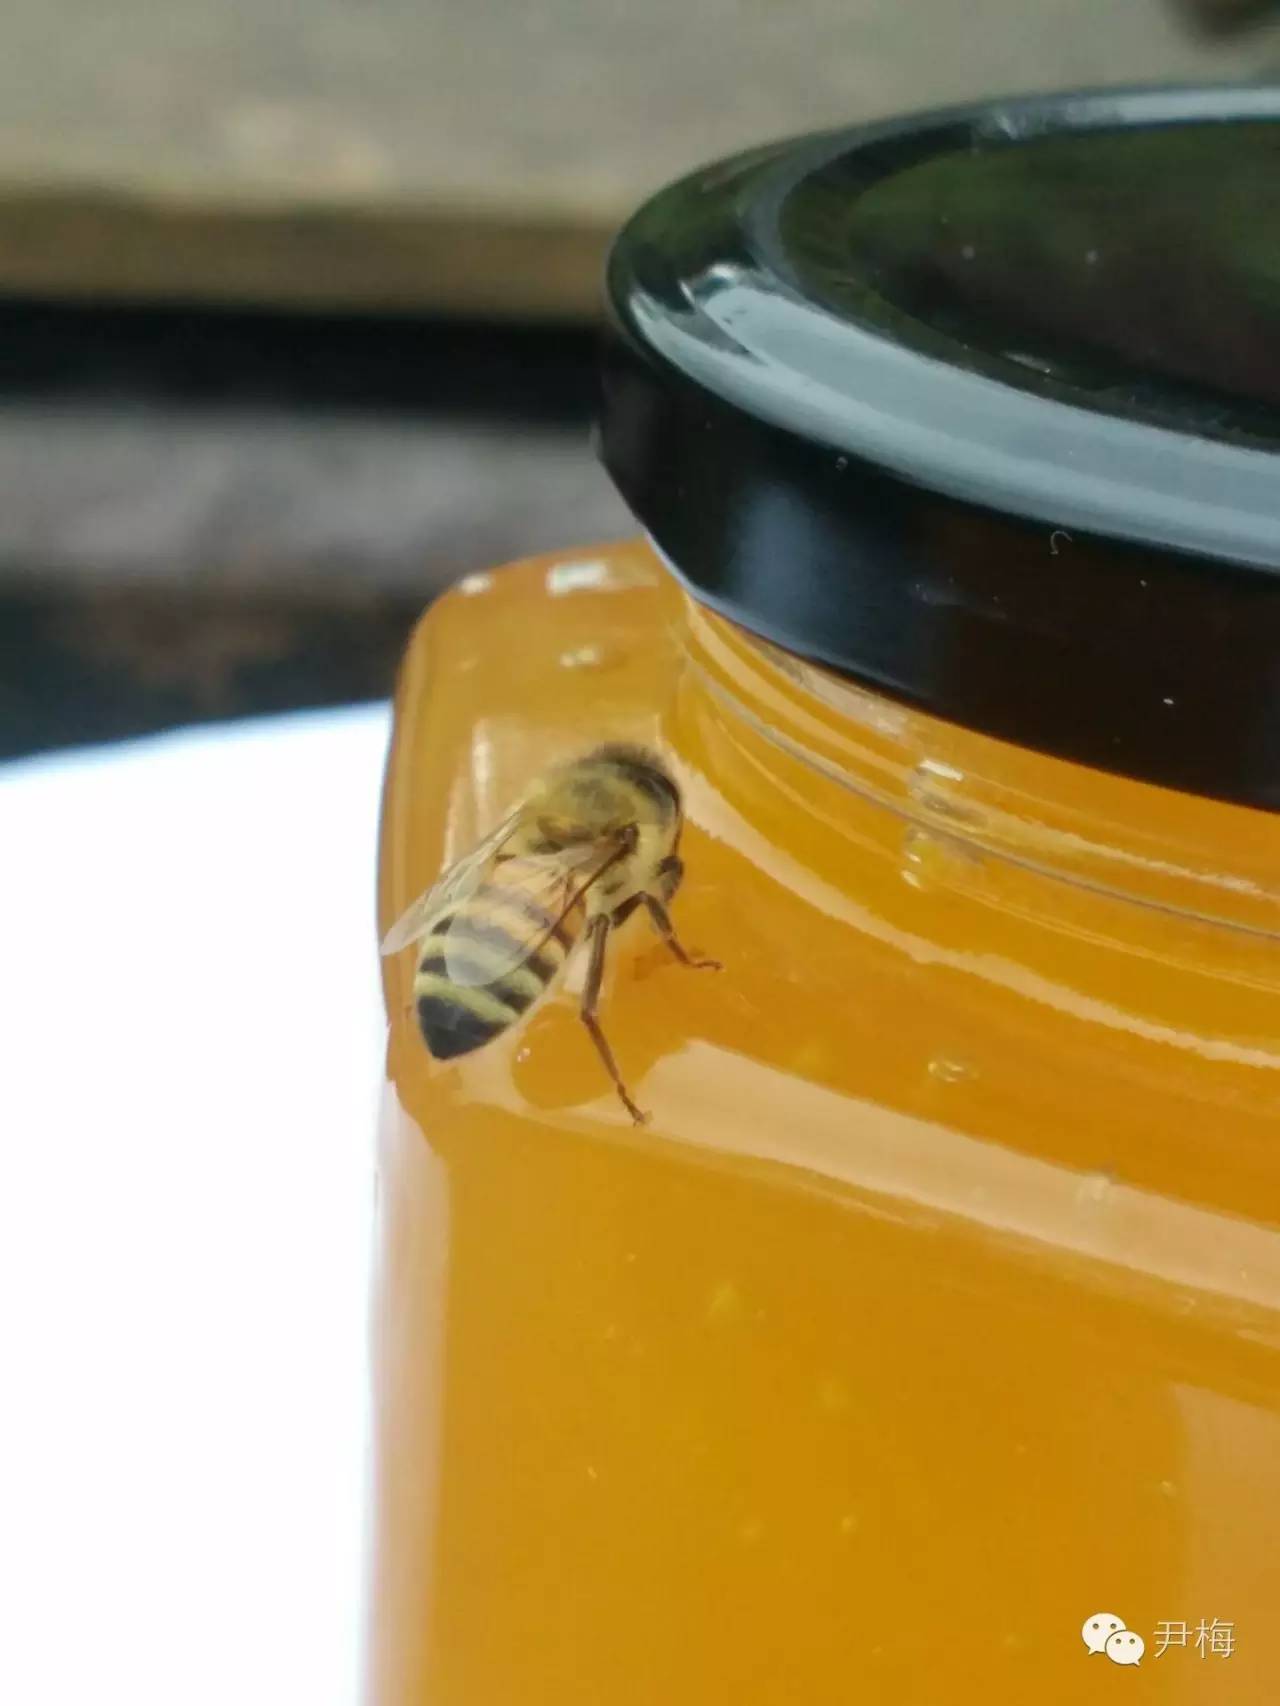 蜂蜜水的作用 减肥 酸奶蜂蜜 蜂蜜价格 蜂蜜功效与作用